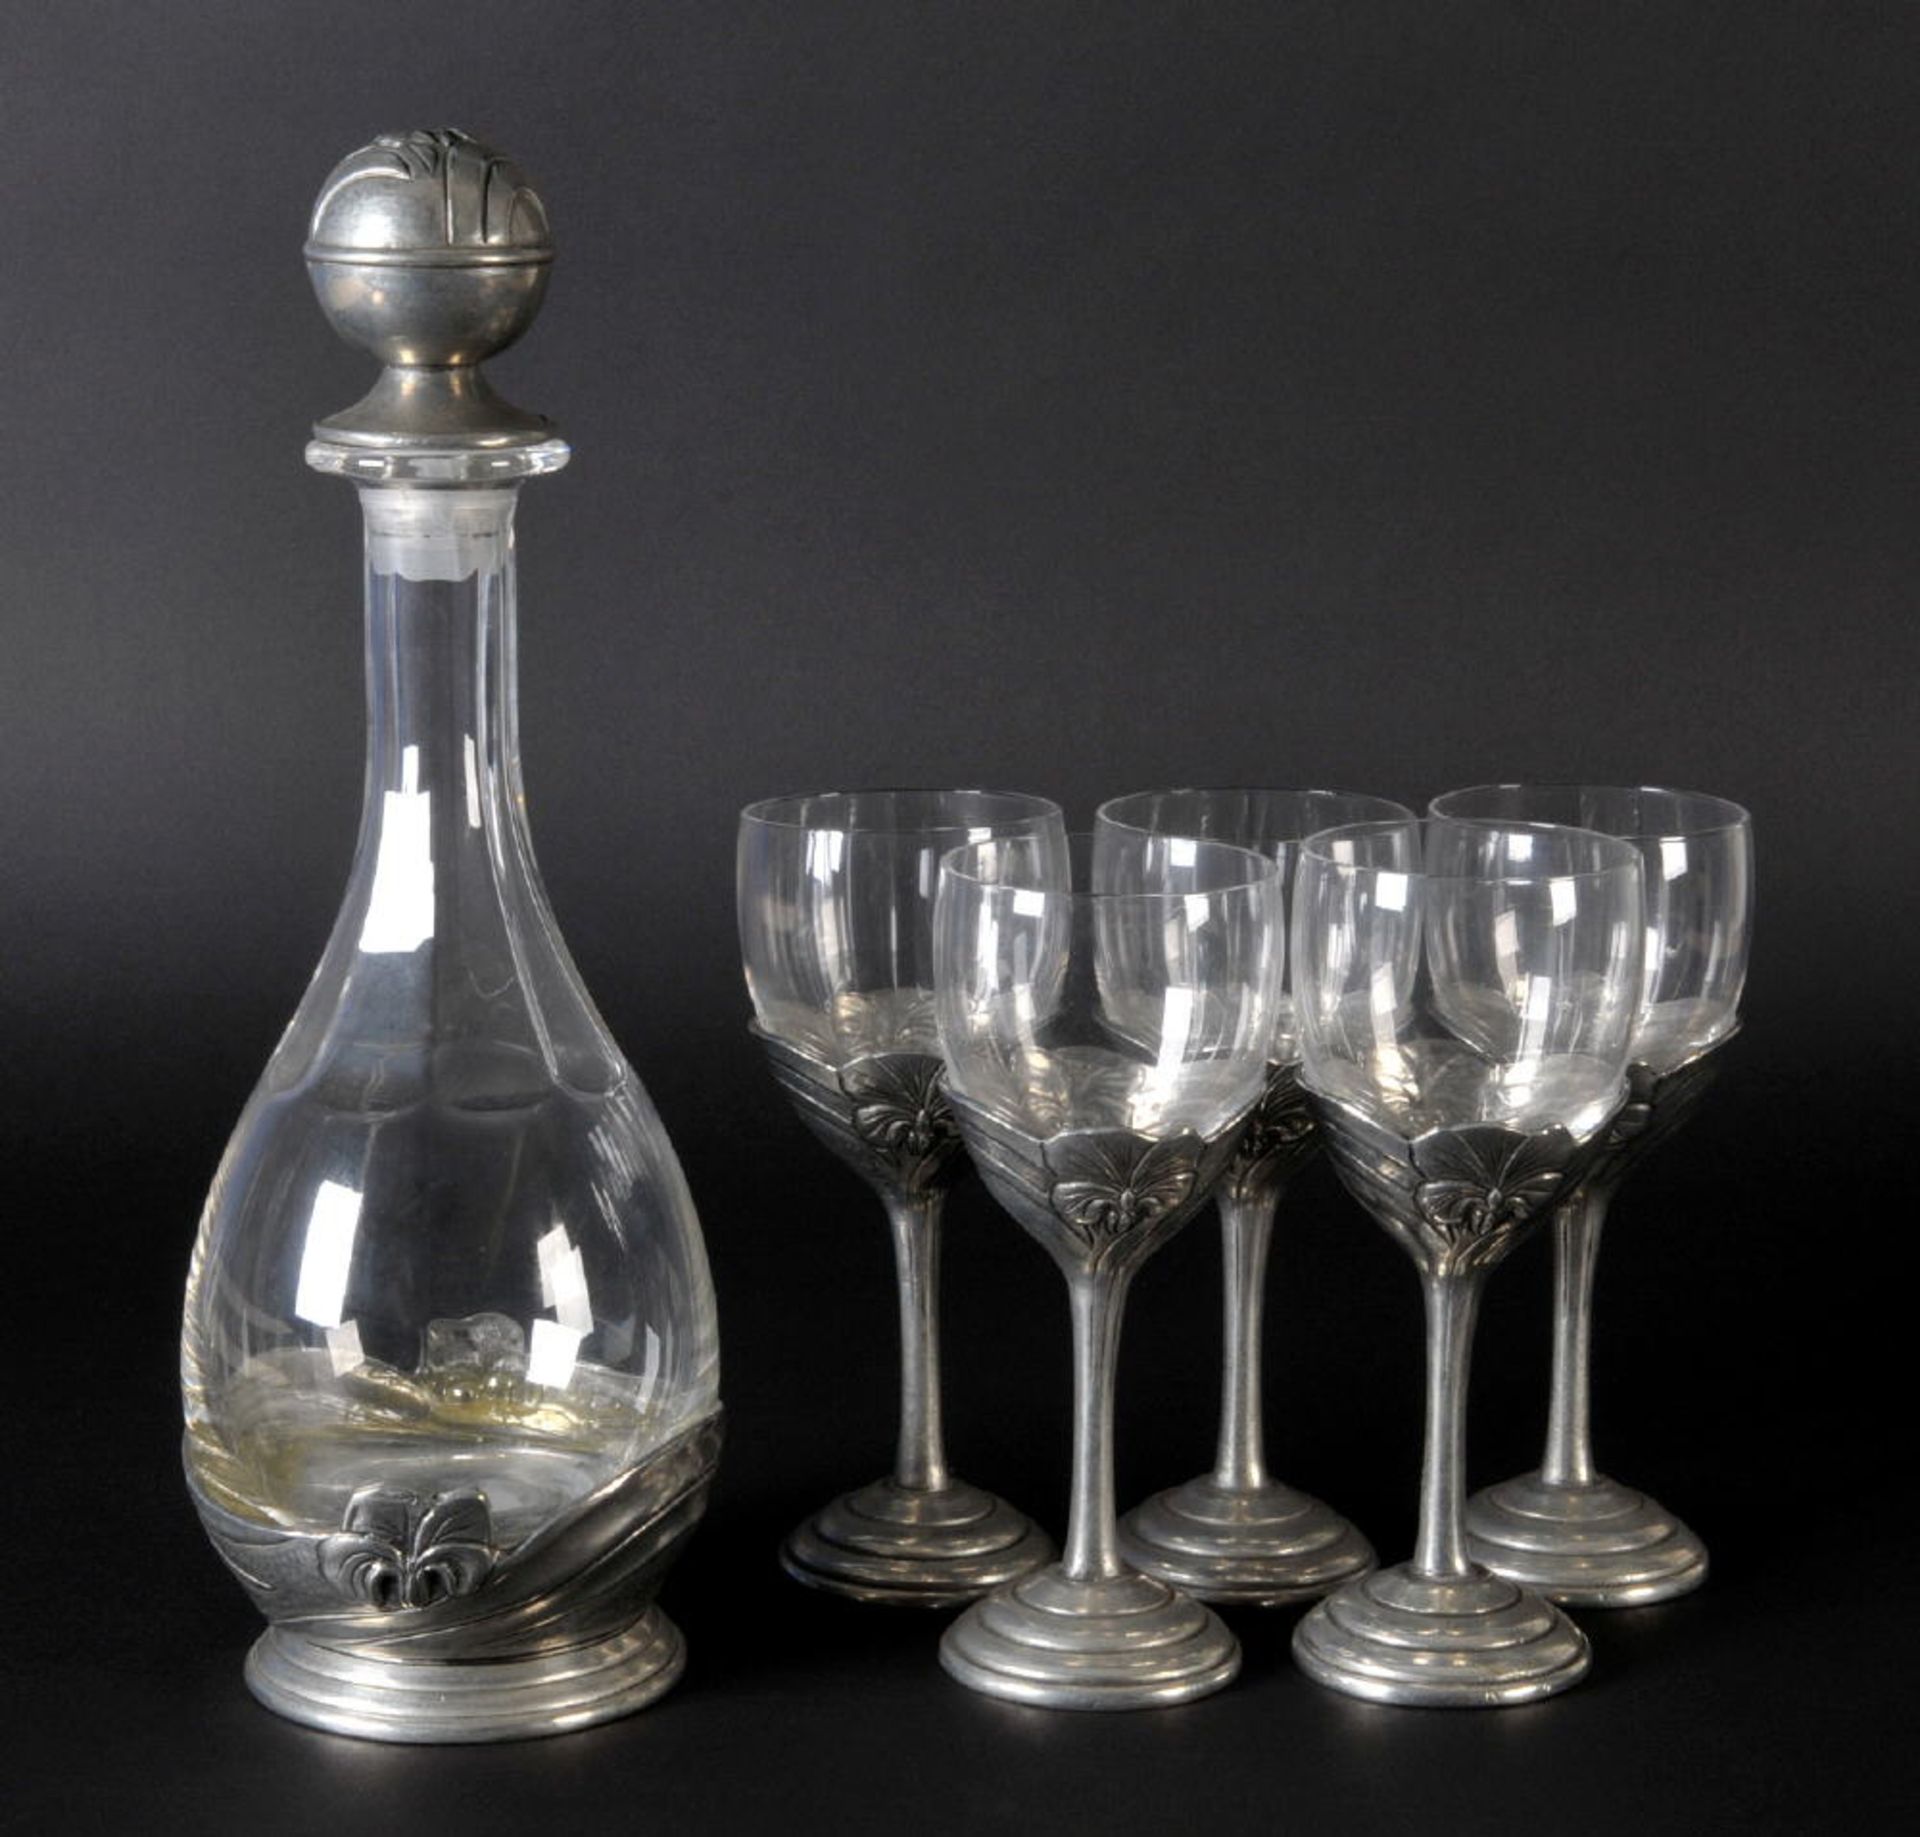 Karaffe mit Stöpsel und 5 Gläsernfarbloses Glas/Zinn, strukturiertes Ornamentdekor, Gläser H= 19 cm,